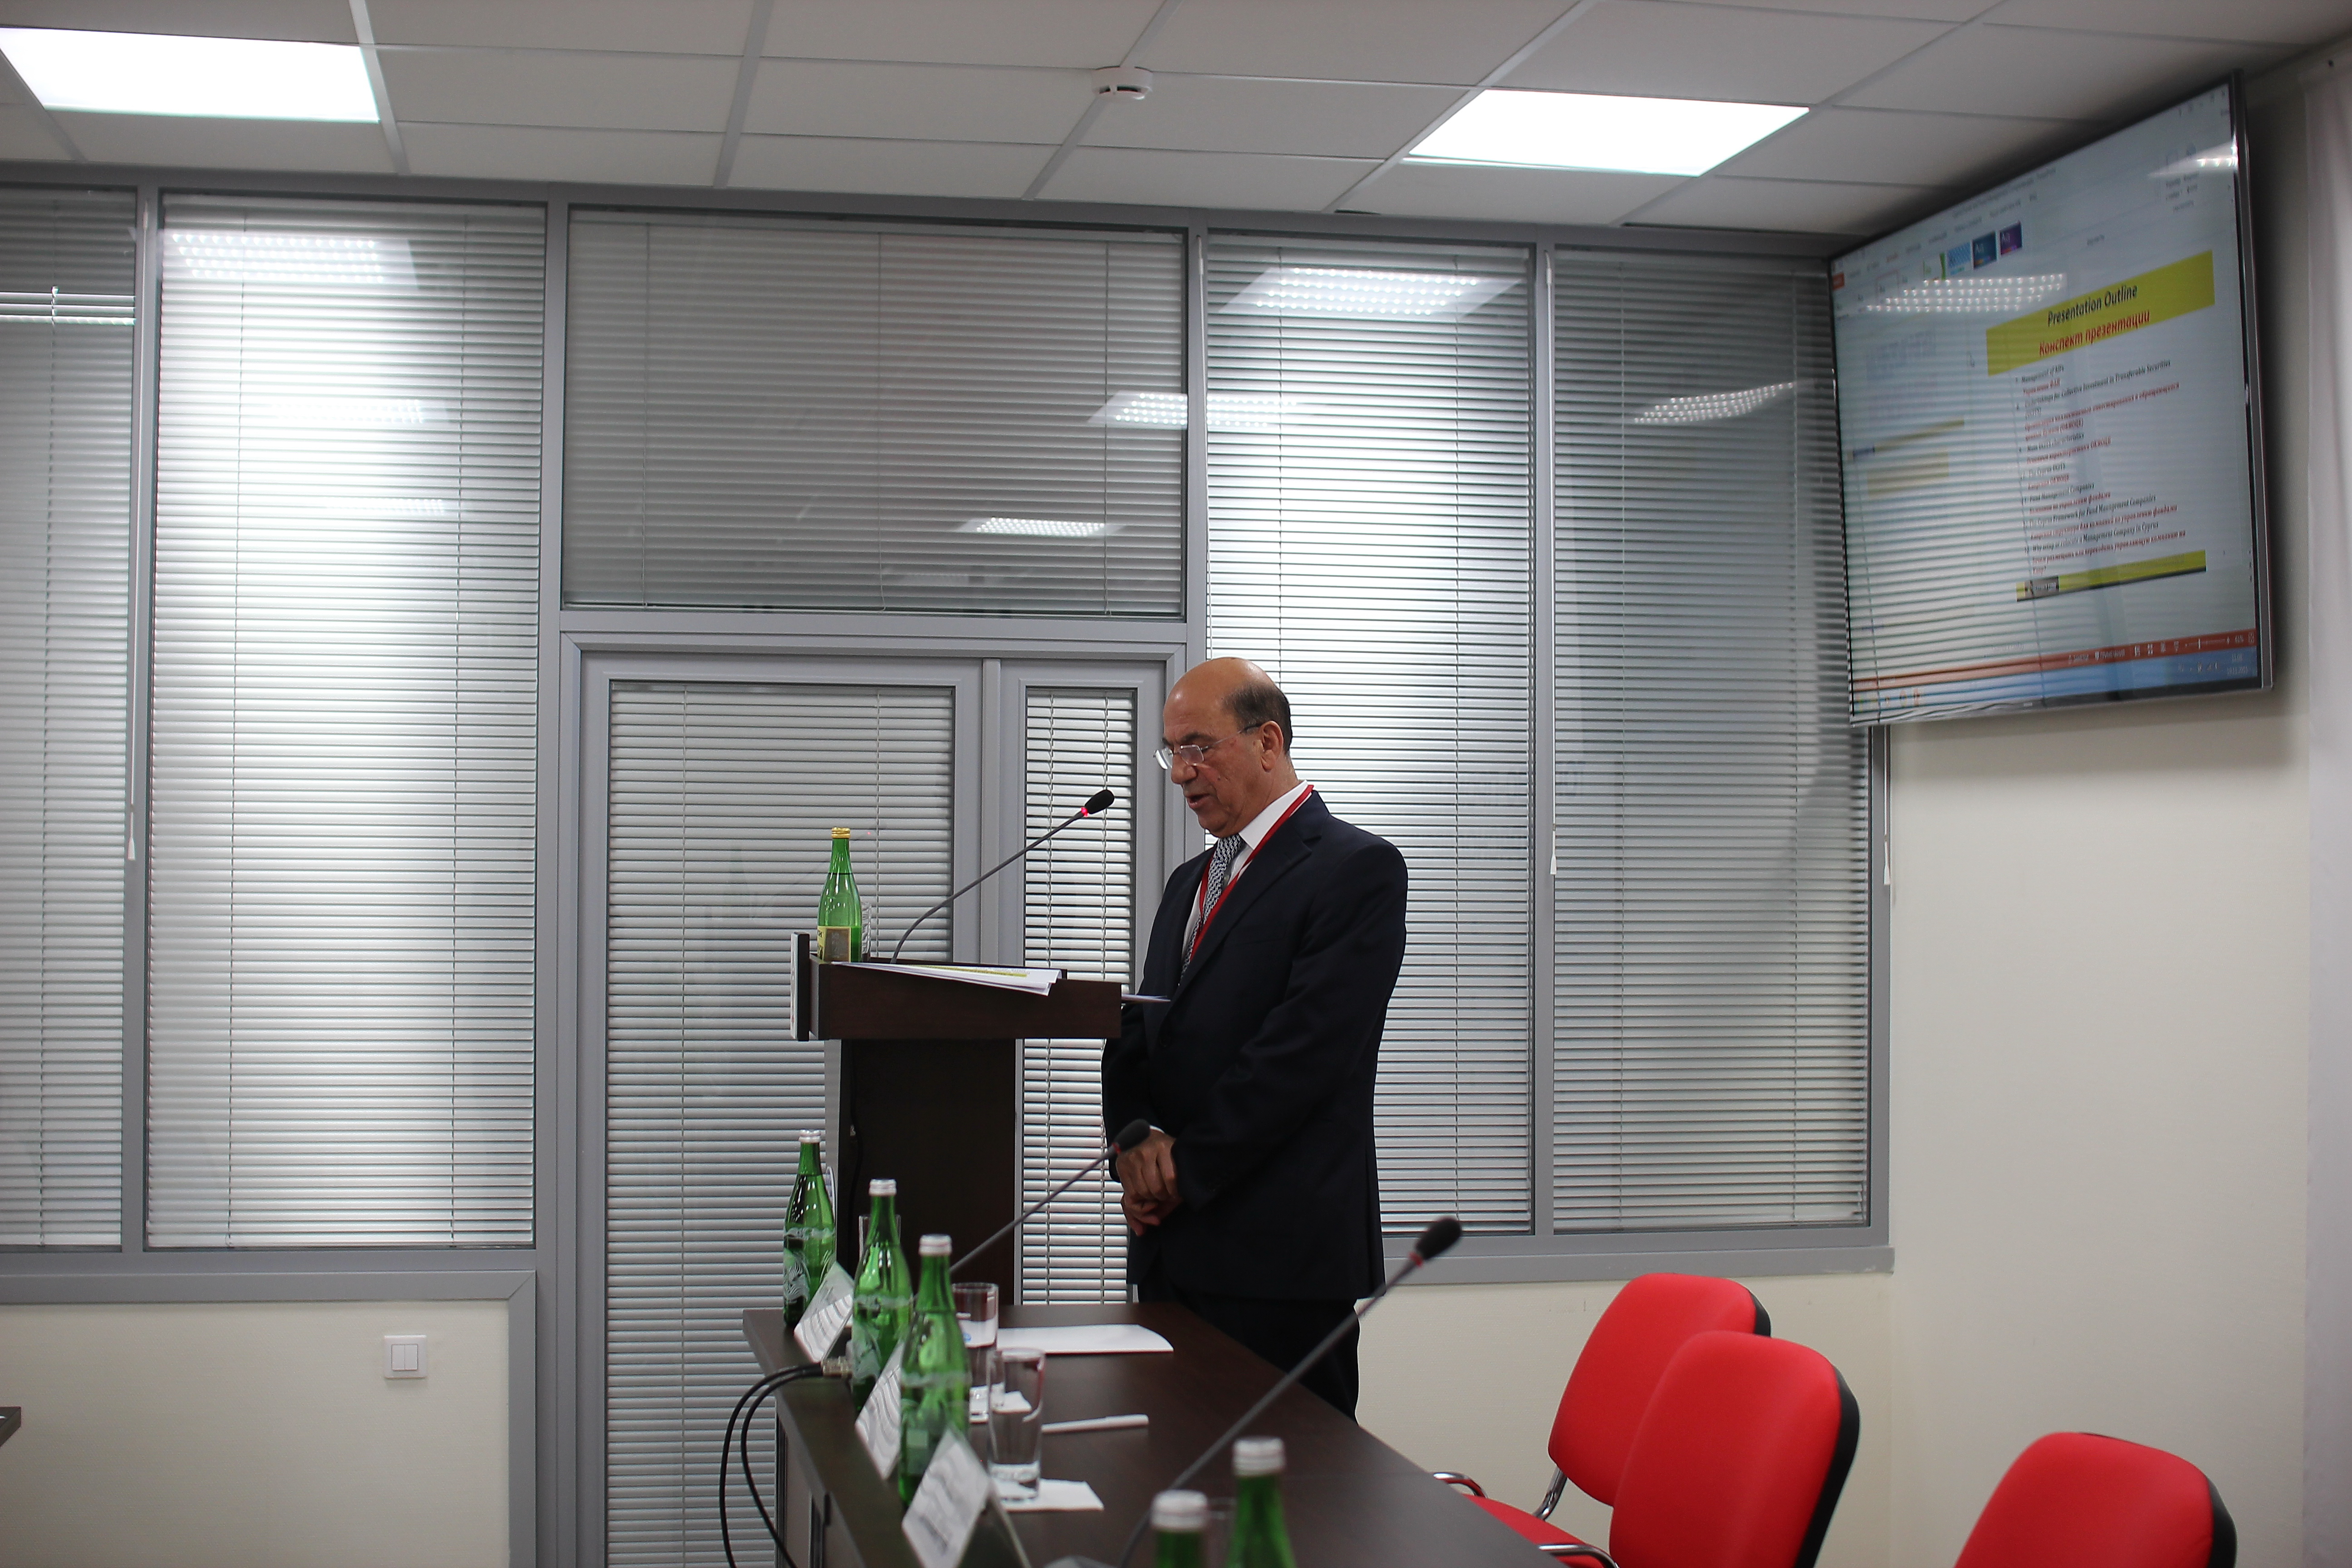 Συμμετοχή Γ. Προξένου σε Ημερίδα για προώθηση επενδύσεων, εμπορίου και τουρισμού προς Κύπρο (Κρασνοντάρ)